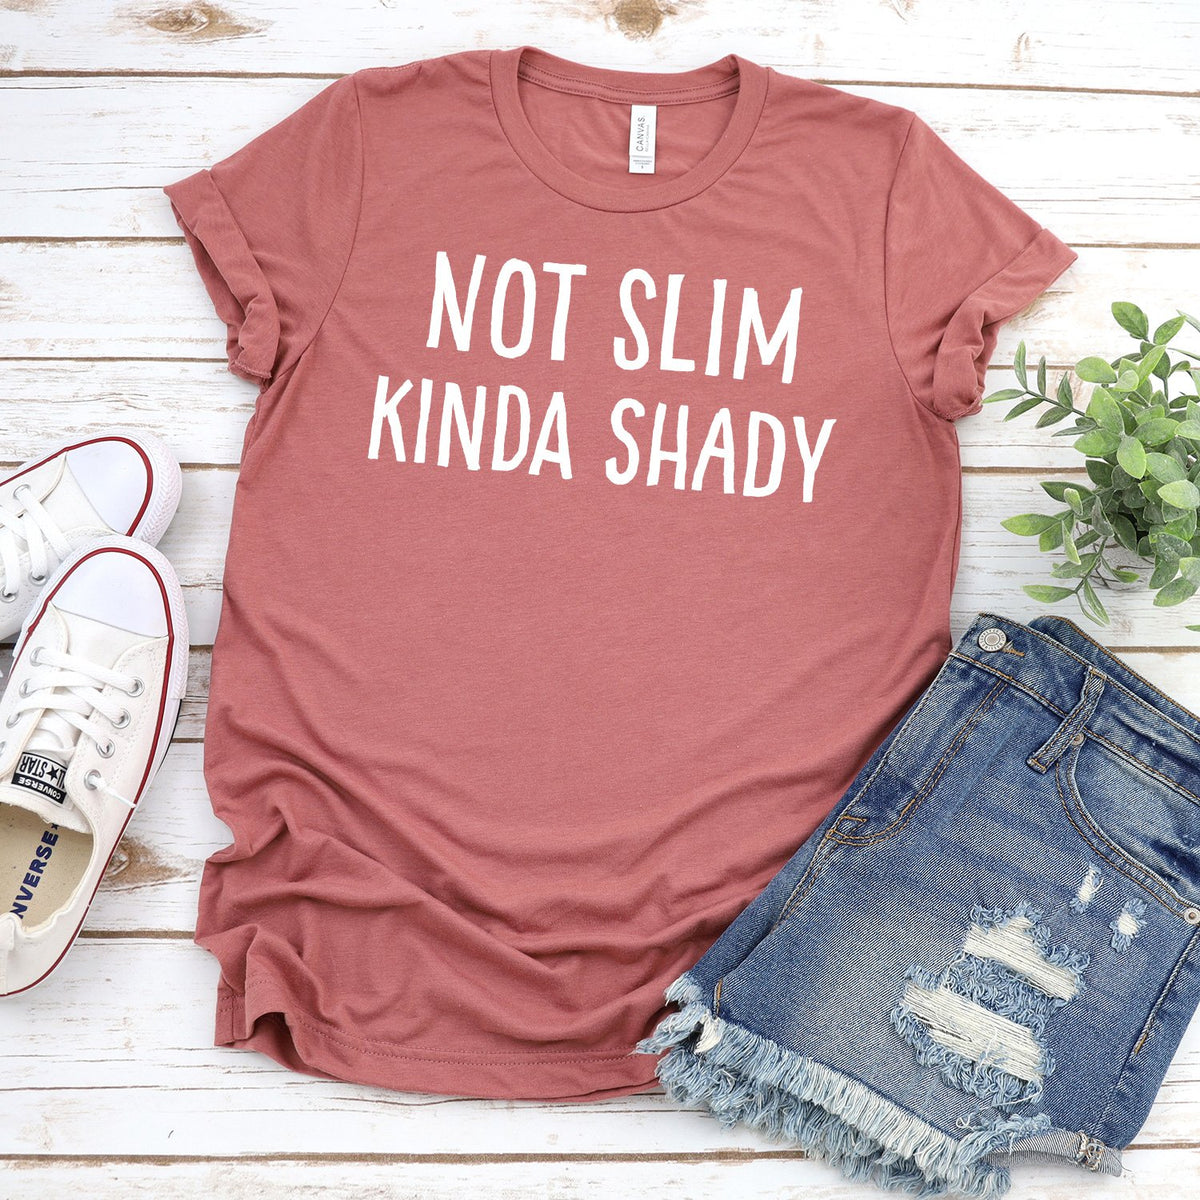 Not Slim Kinda Shady - Short Sleeve Tee Shirt